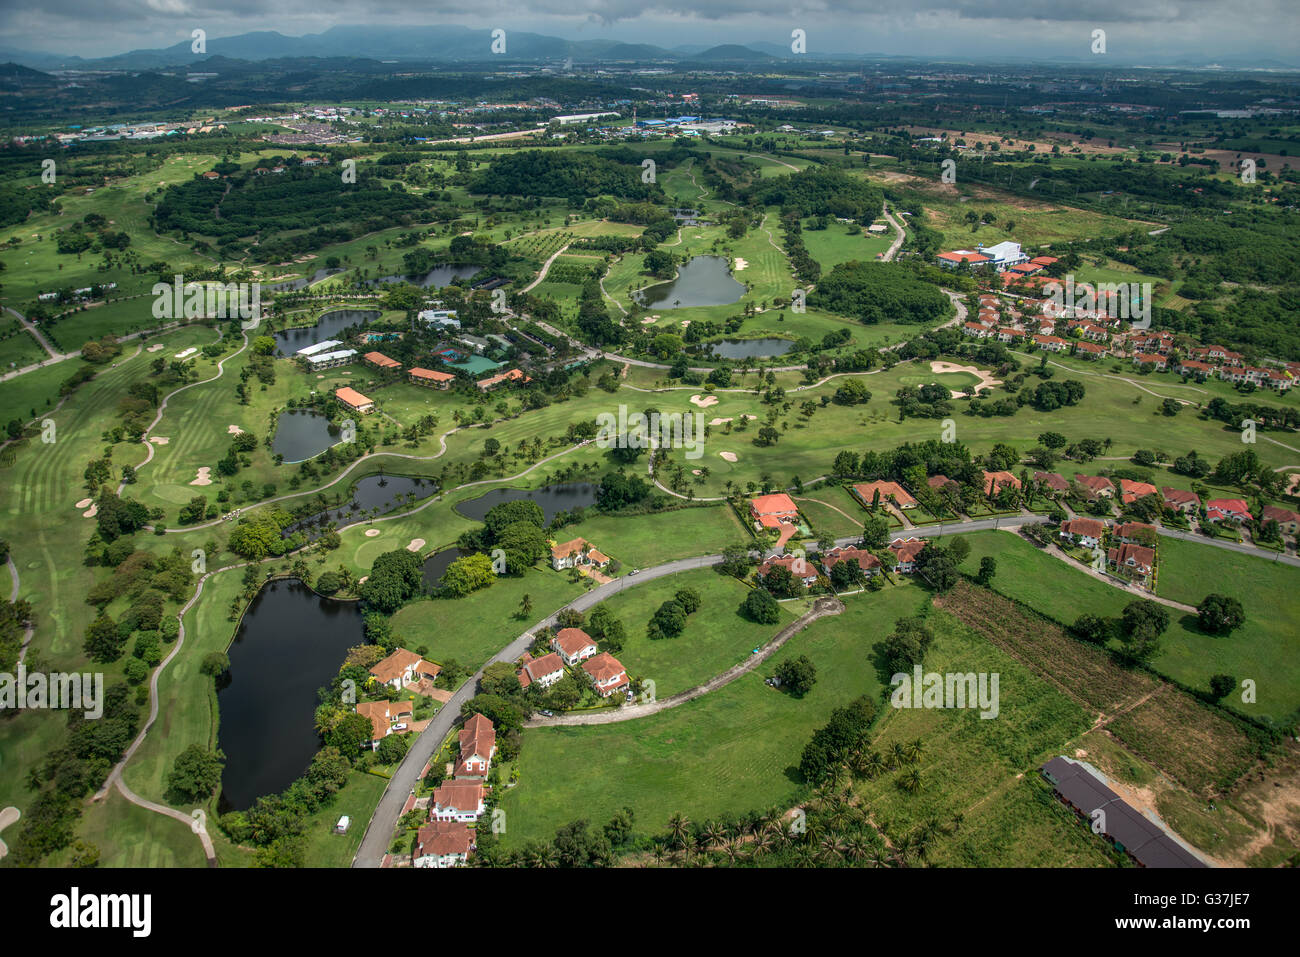 Cours de golf Golf club de photographie aérienne, de la photographie, de l'air photographie aérienne de golf en Thaïlande Banque D'Images